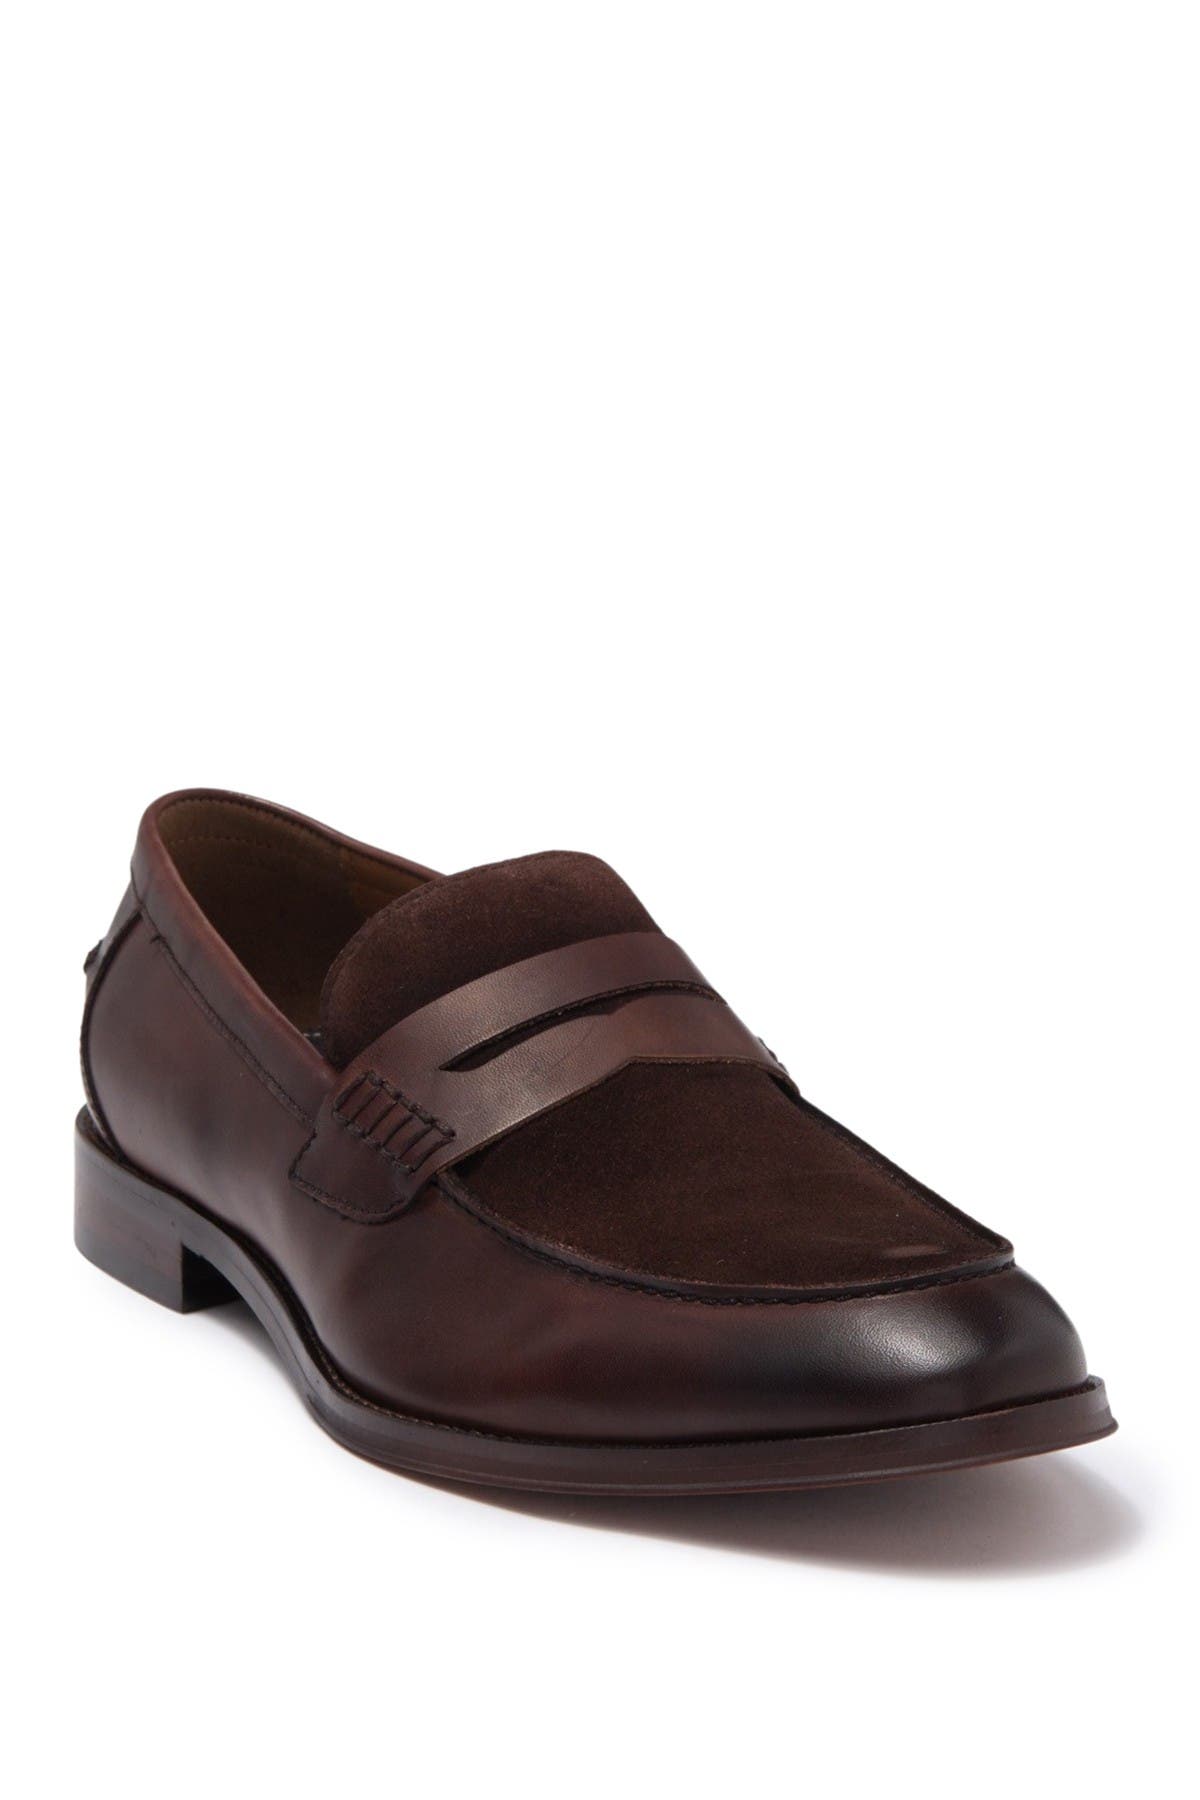 Men's Slip-On Shoes | Nordstrom Rack